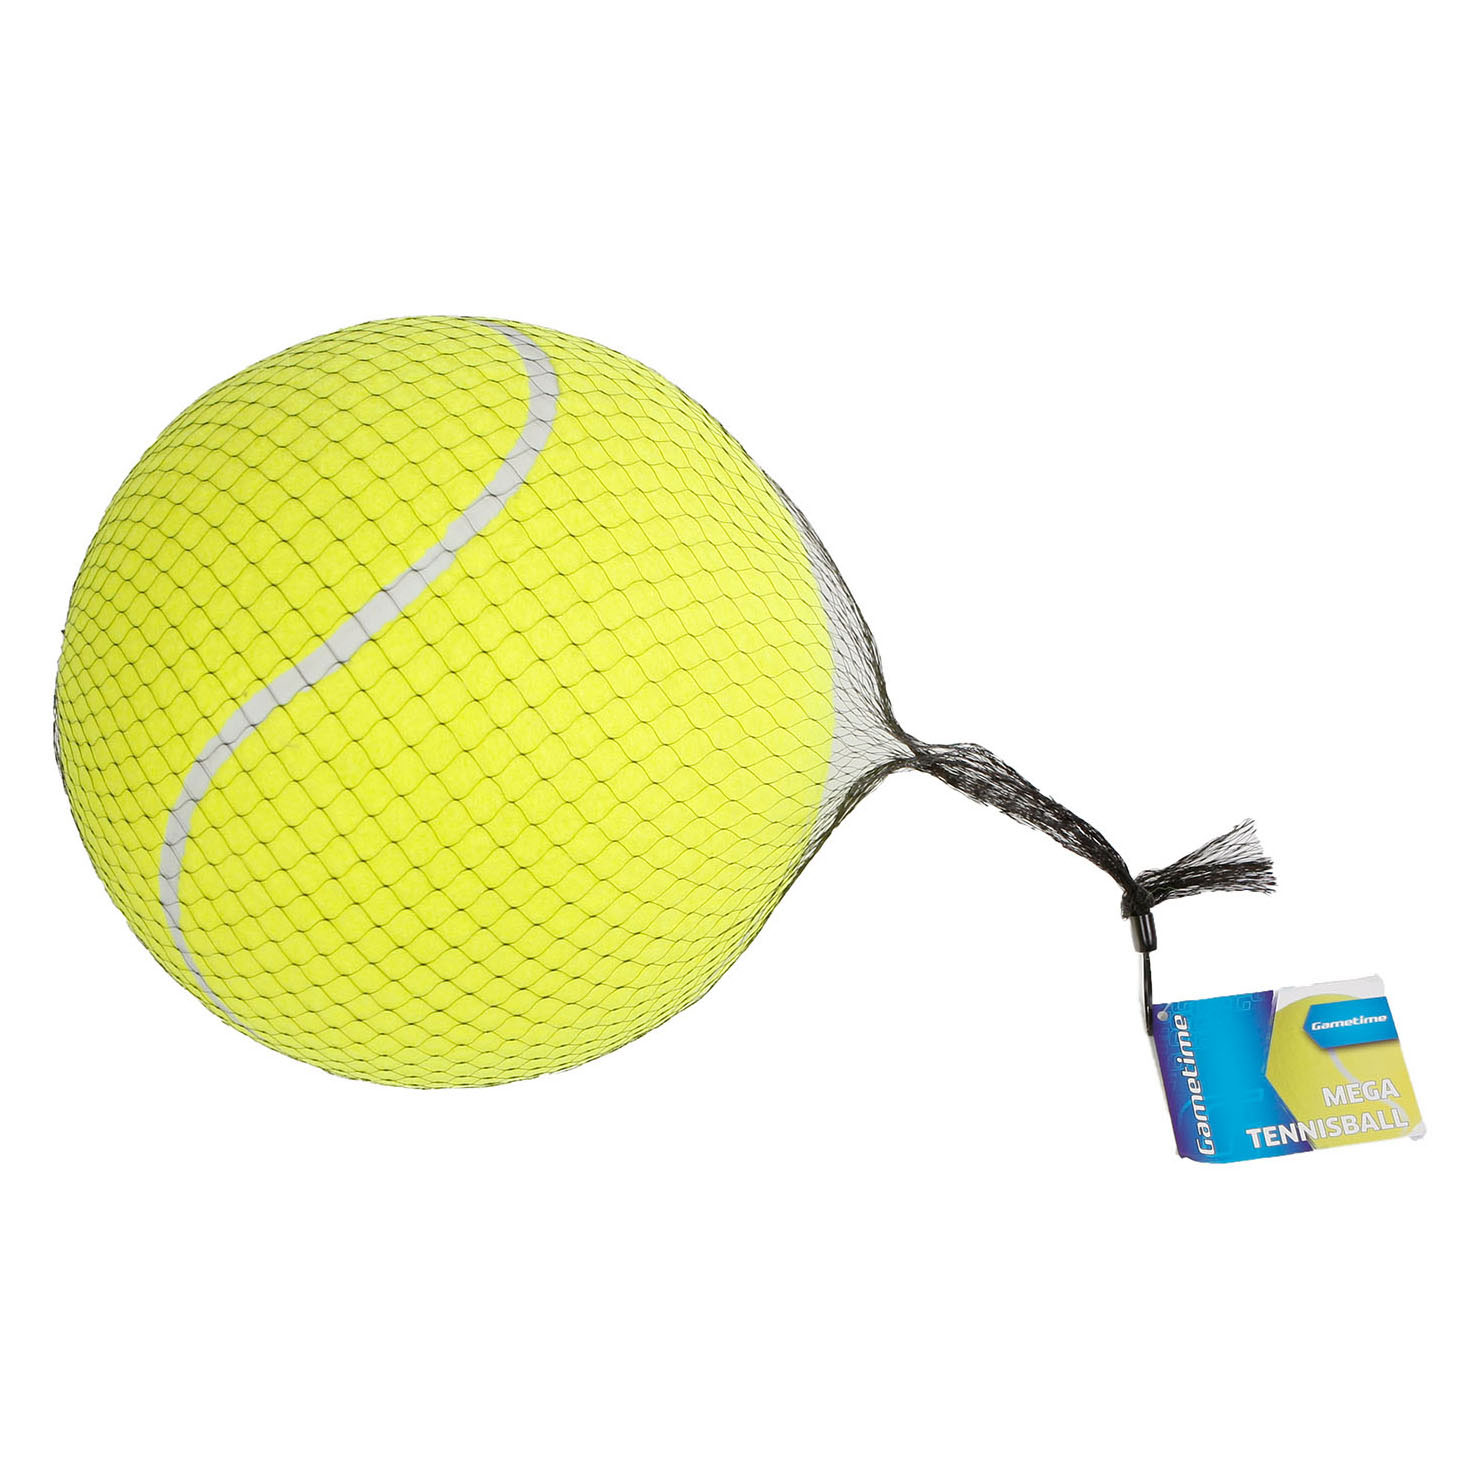 Méga balle de tennis, 24 cm